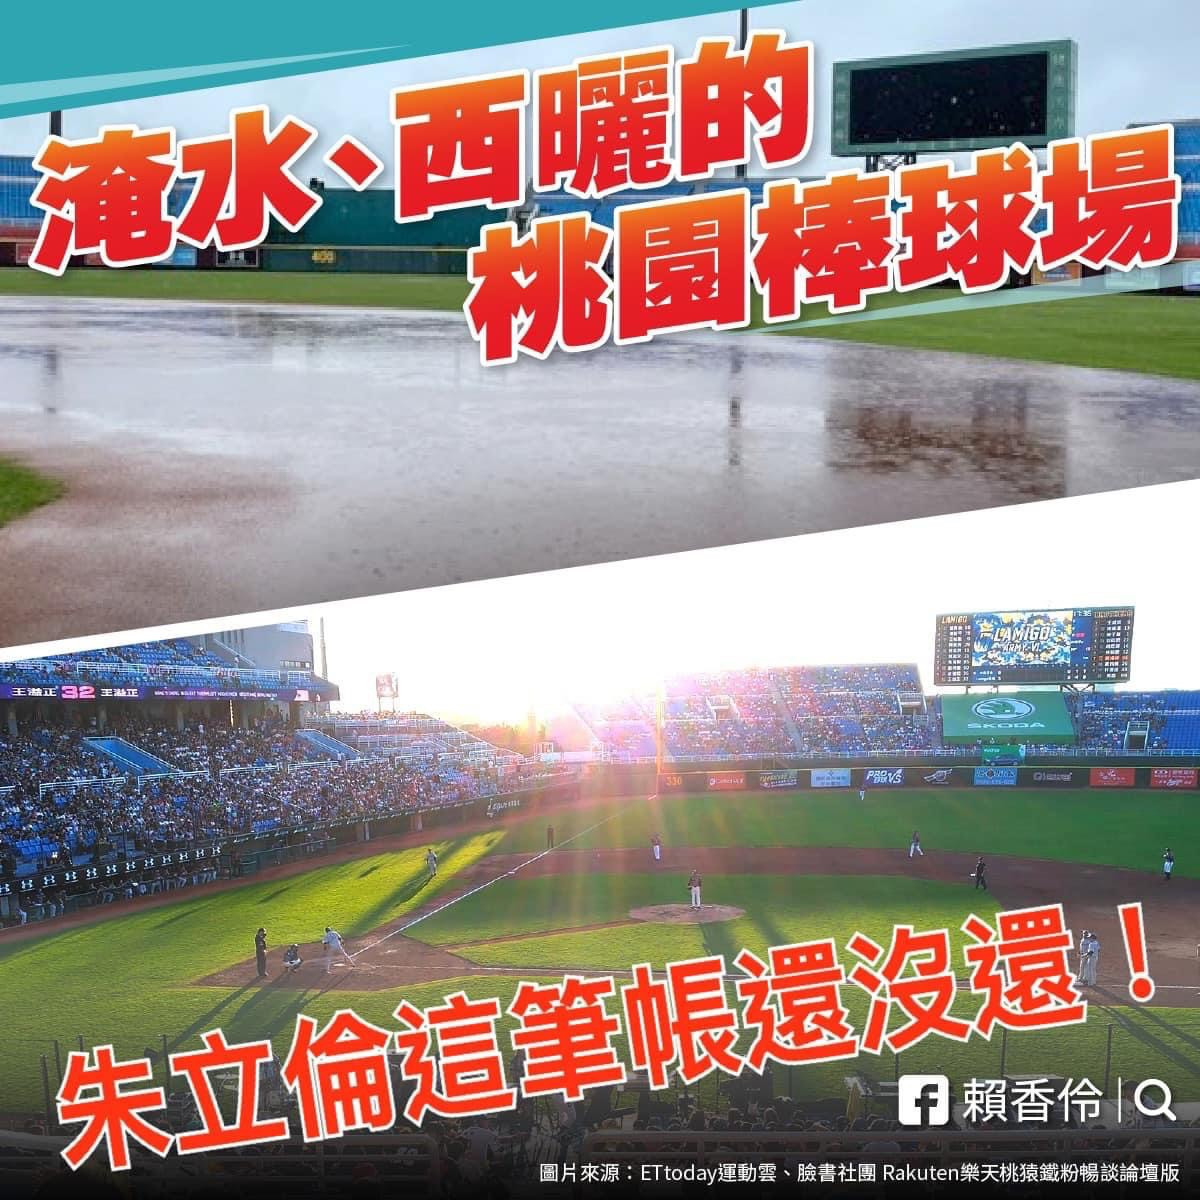 台灣民眾黨桃園市長參選人、立委賴香伶於臉書PO文直指「關於棒球場，國民黨主席朱立倫在桃園還有一筆帳沒算」。<br /><br />
